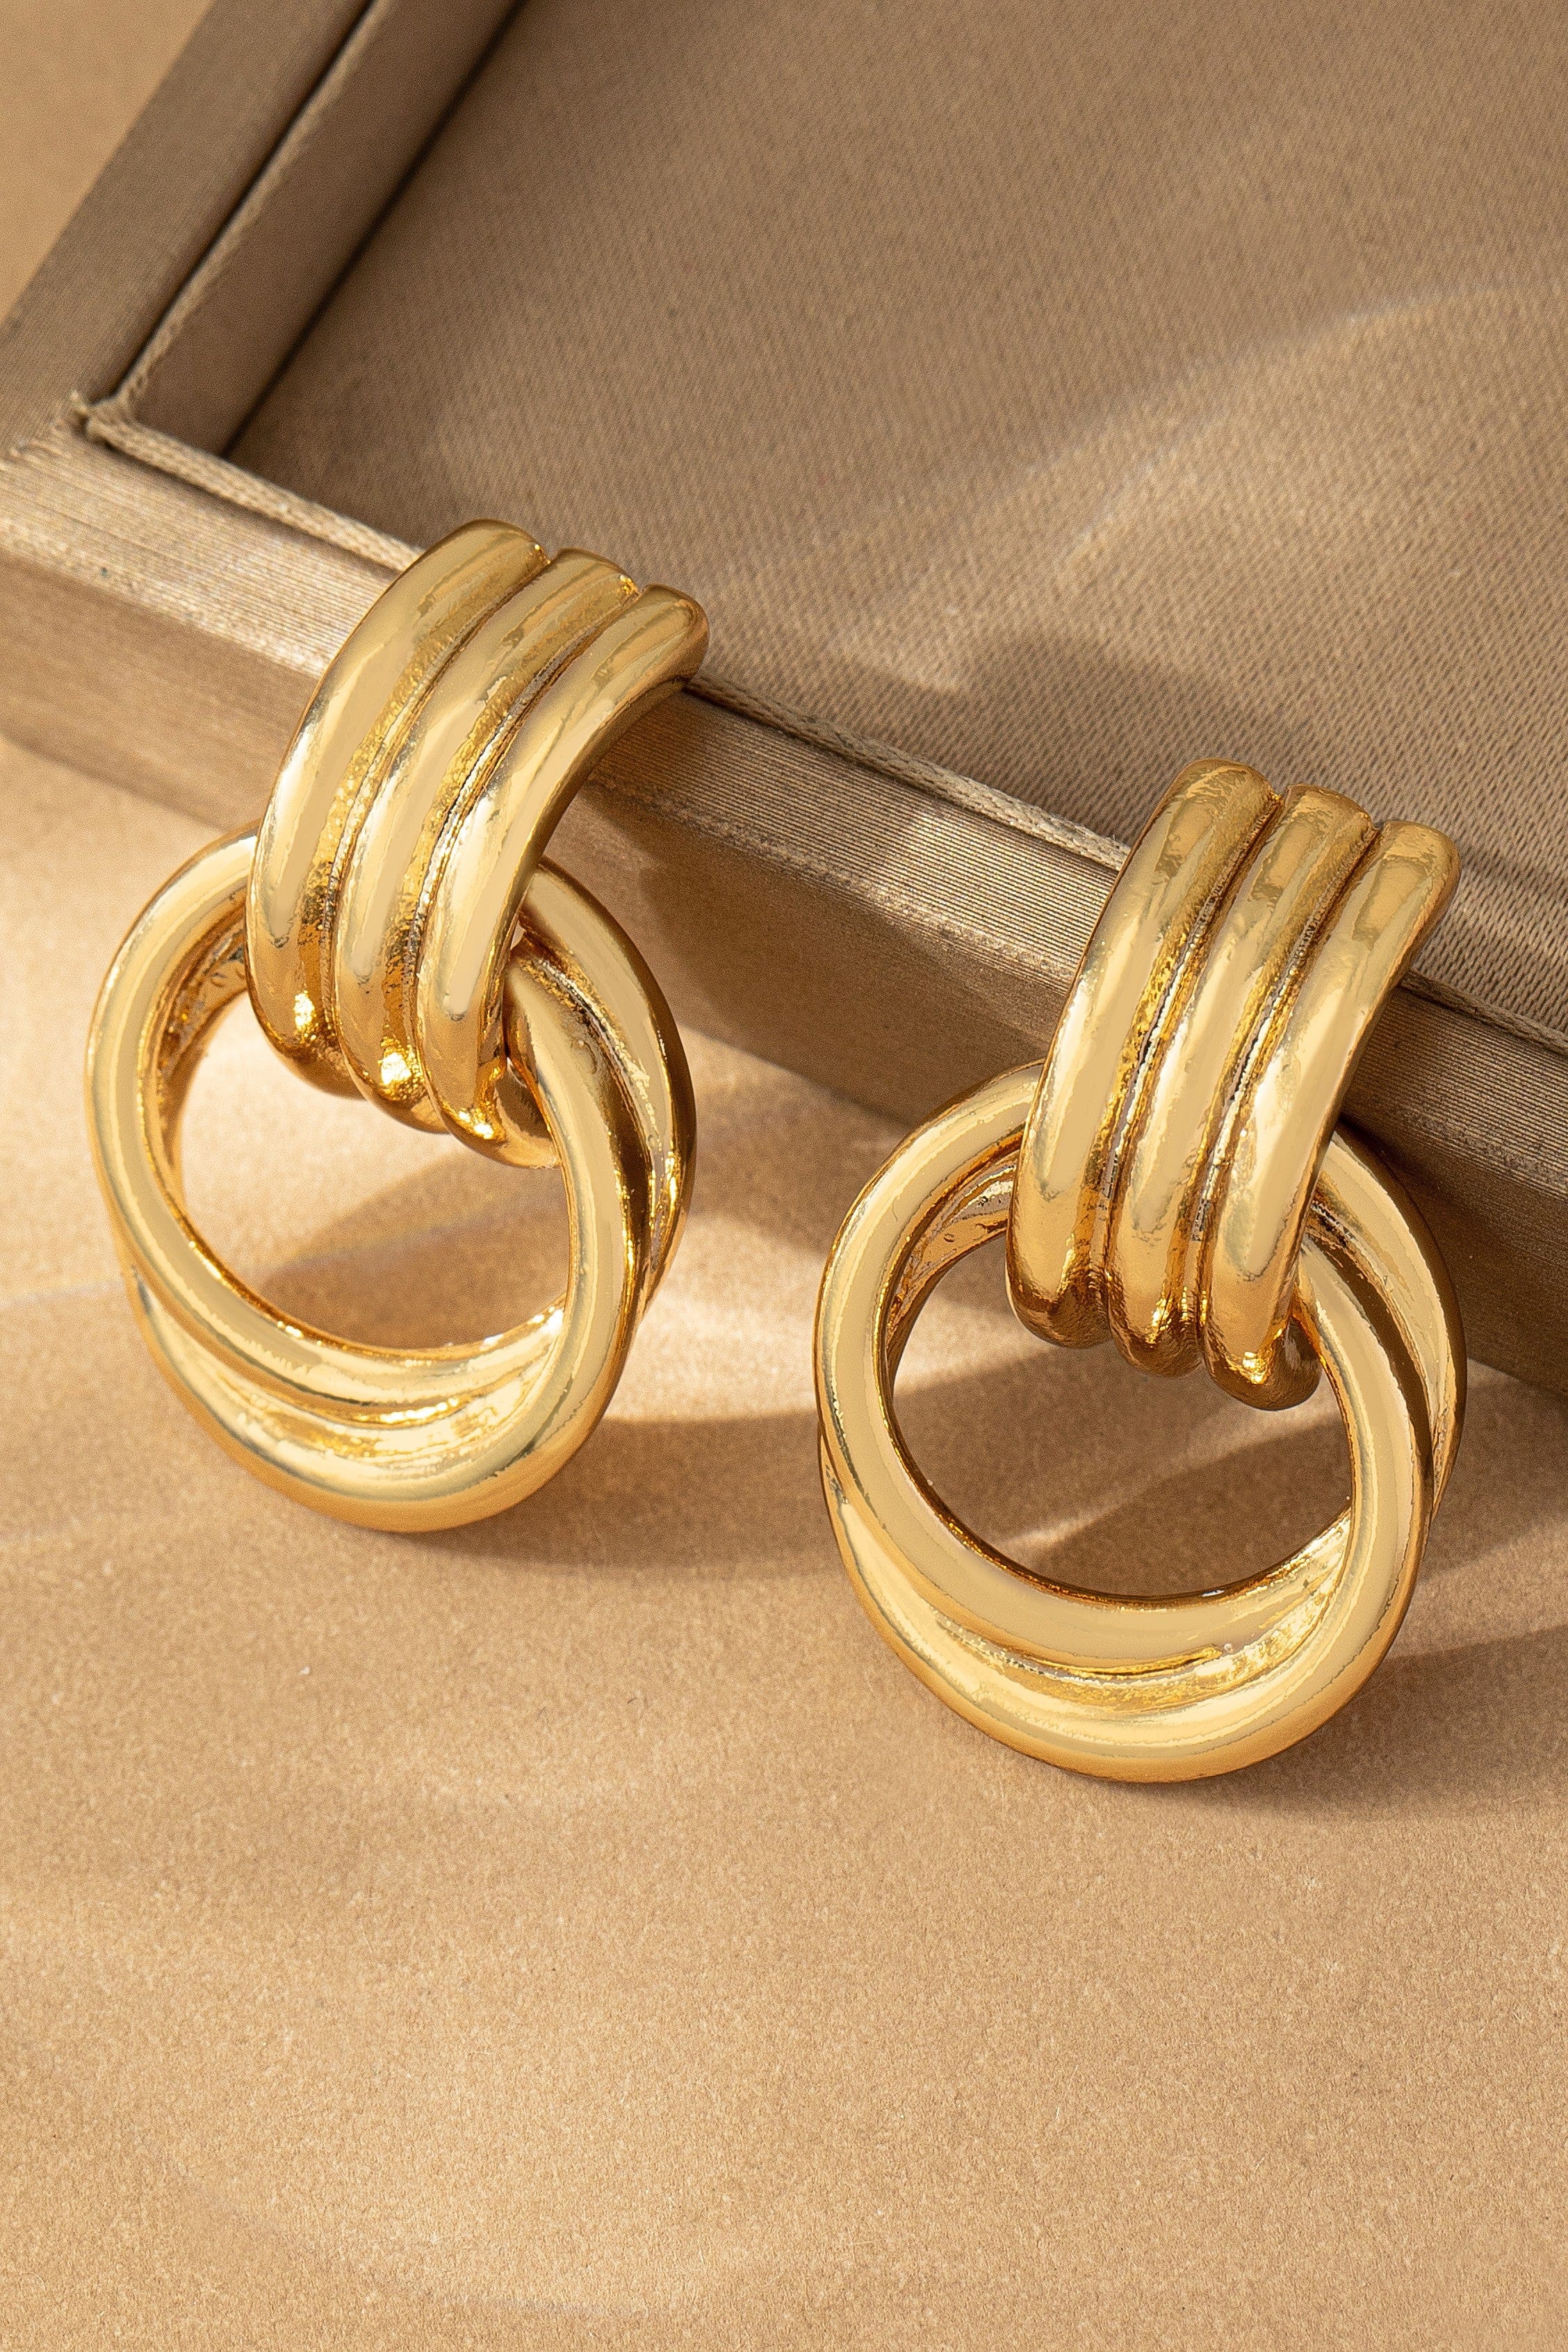 LA3accessories Jewelry - Earrings Intertwined Hoop Door Knocker Earrings In Multi